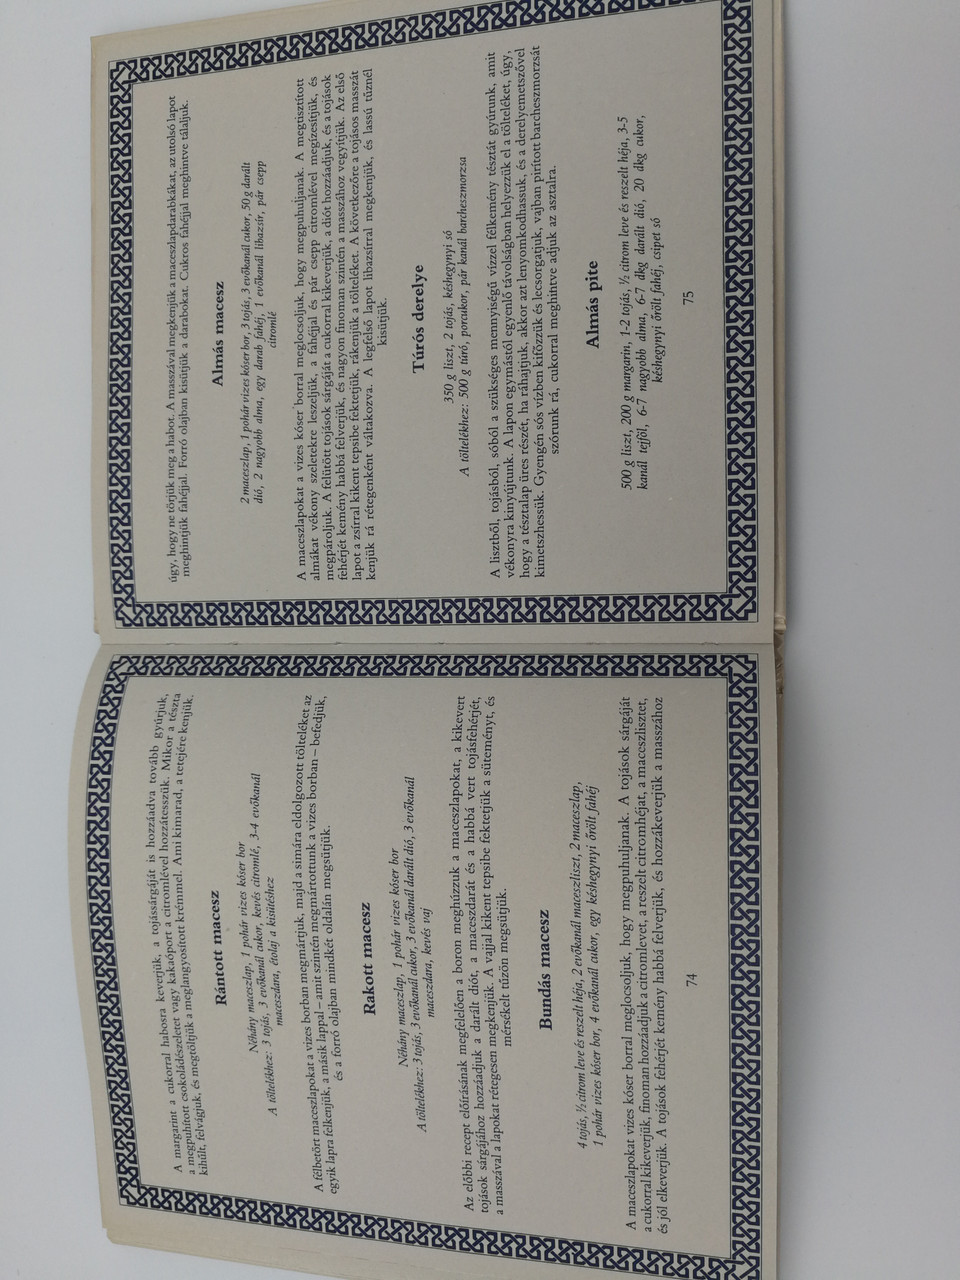 Régi Zsidó Ételek by Herbst-Krausz Zorica / Recipes of Old Jewish meals /  Corvina könyvkiadó 1988 / Recipes for 4 persons - bibleinmylanguage